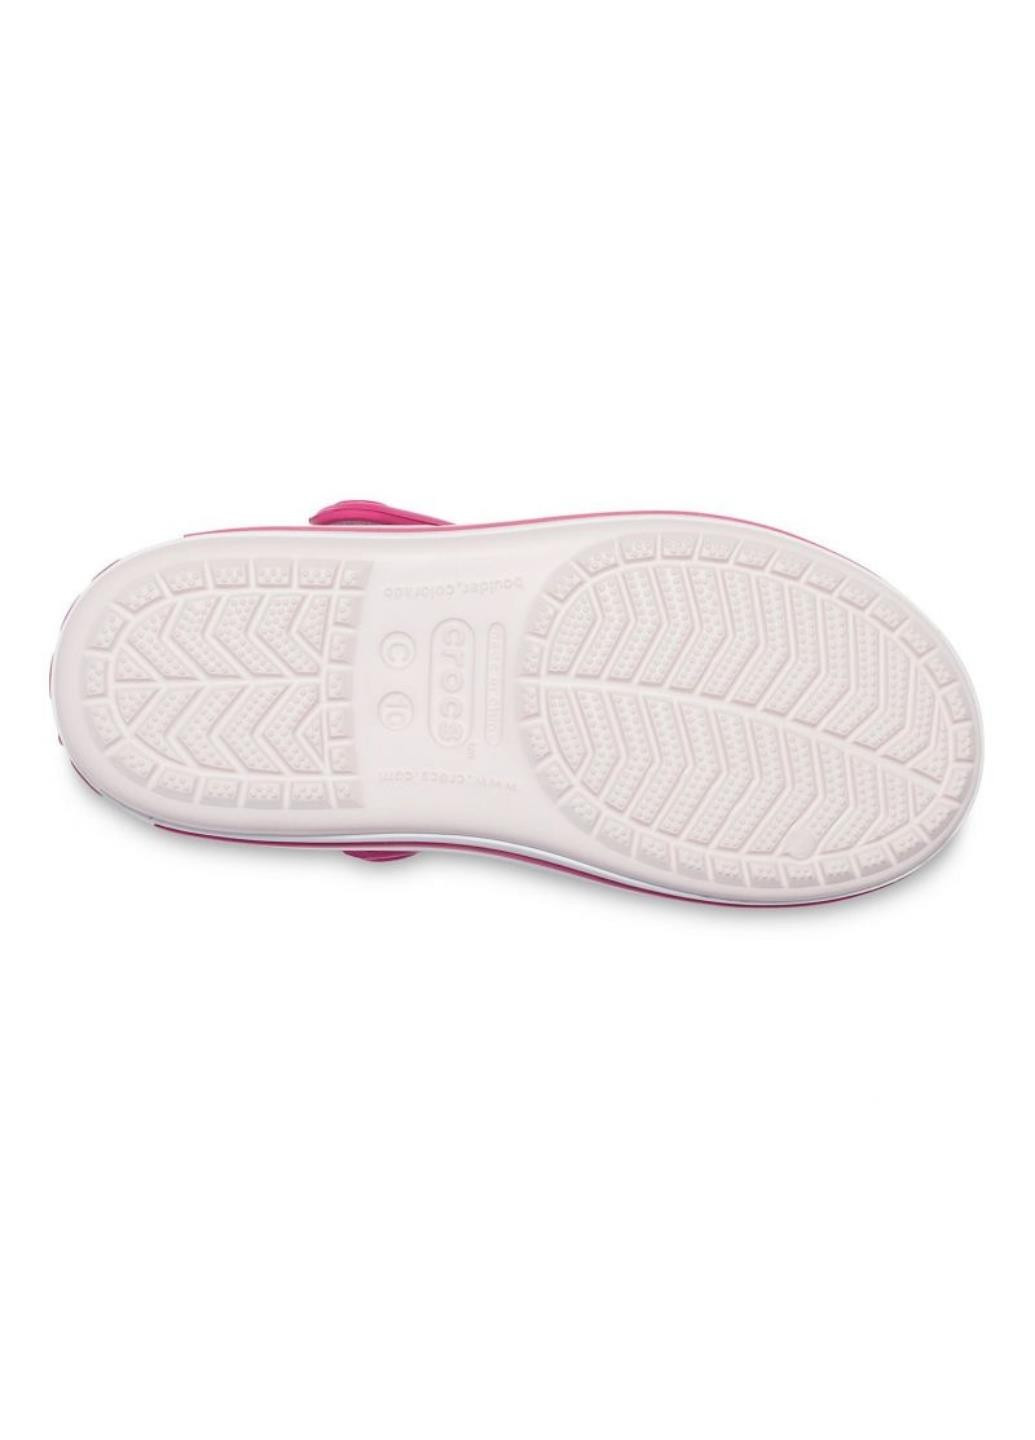 Светло-розовые спортивные крокс детские crocband sandal Crocs на липучке